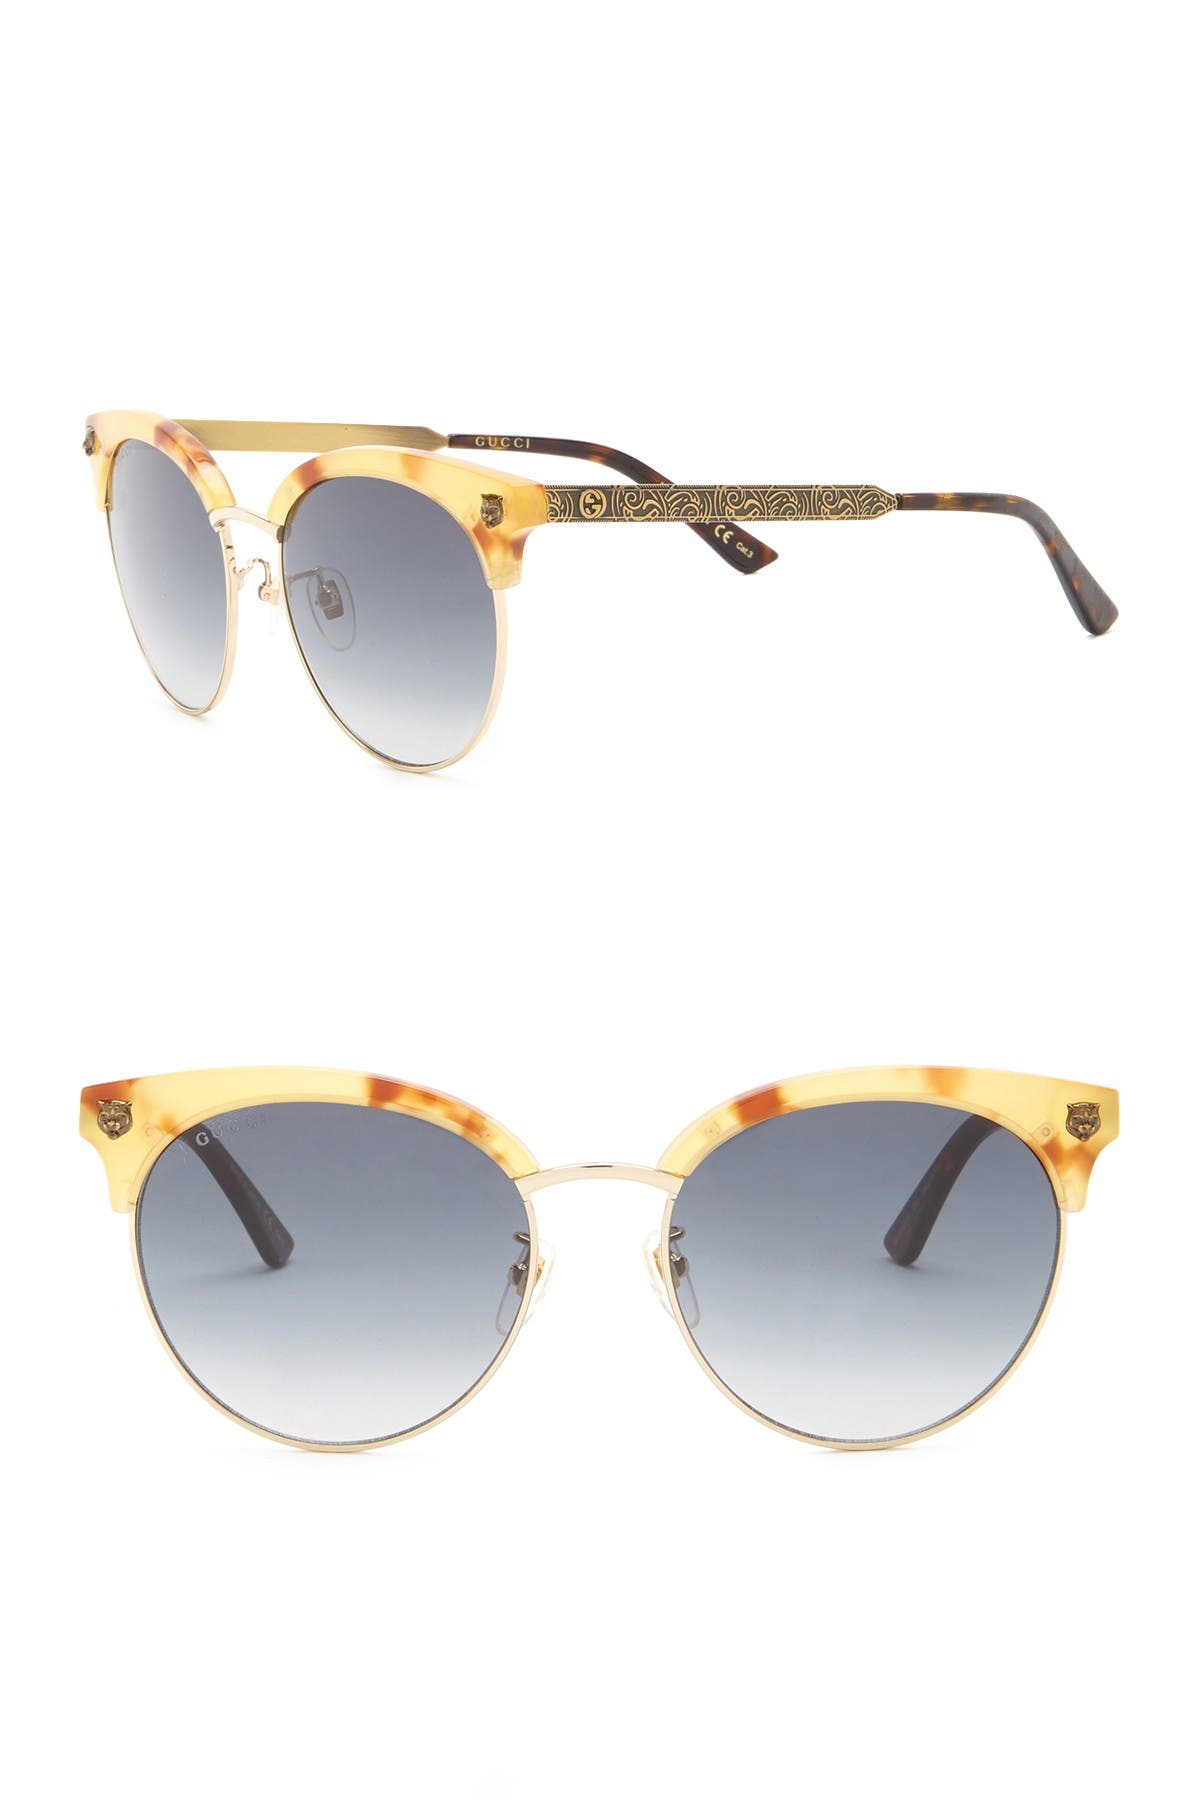 GUCCI | 56mm Clubmaster Sunglasses 